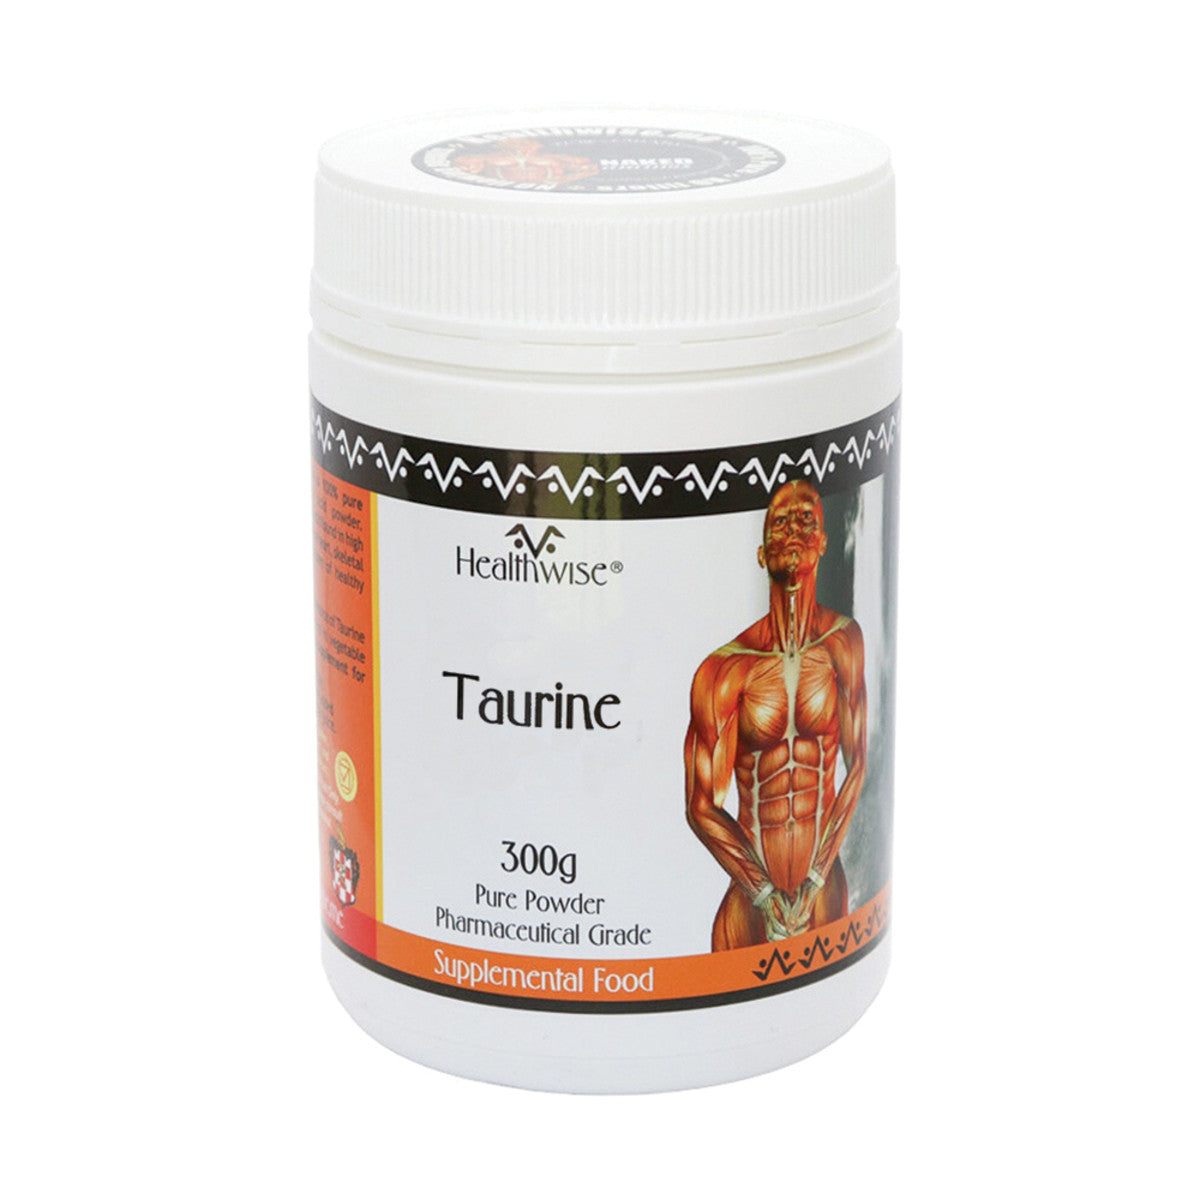 Healthwise Taurine 300G Powder